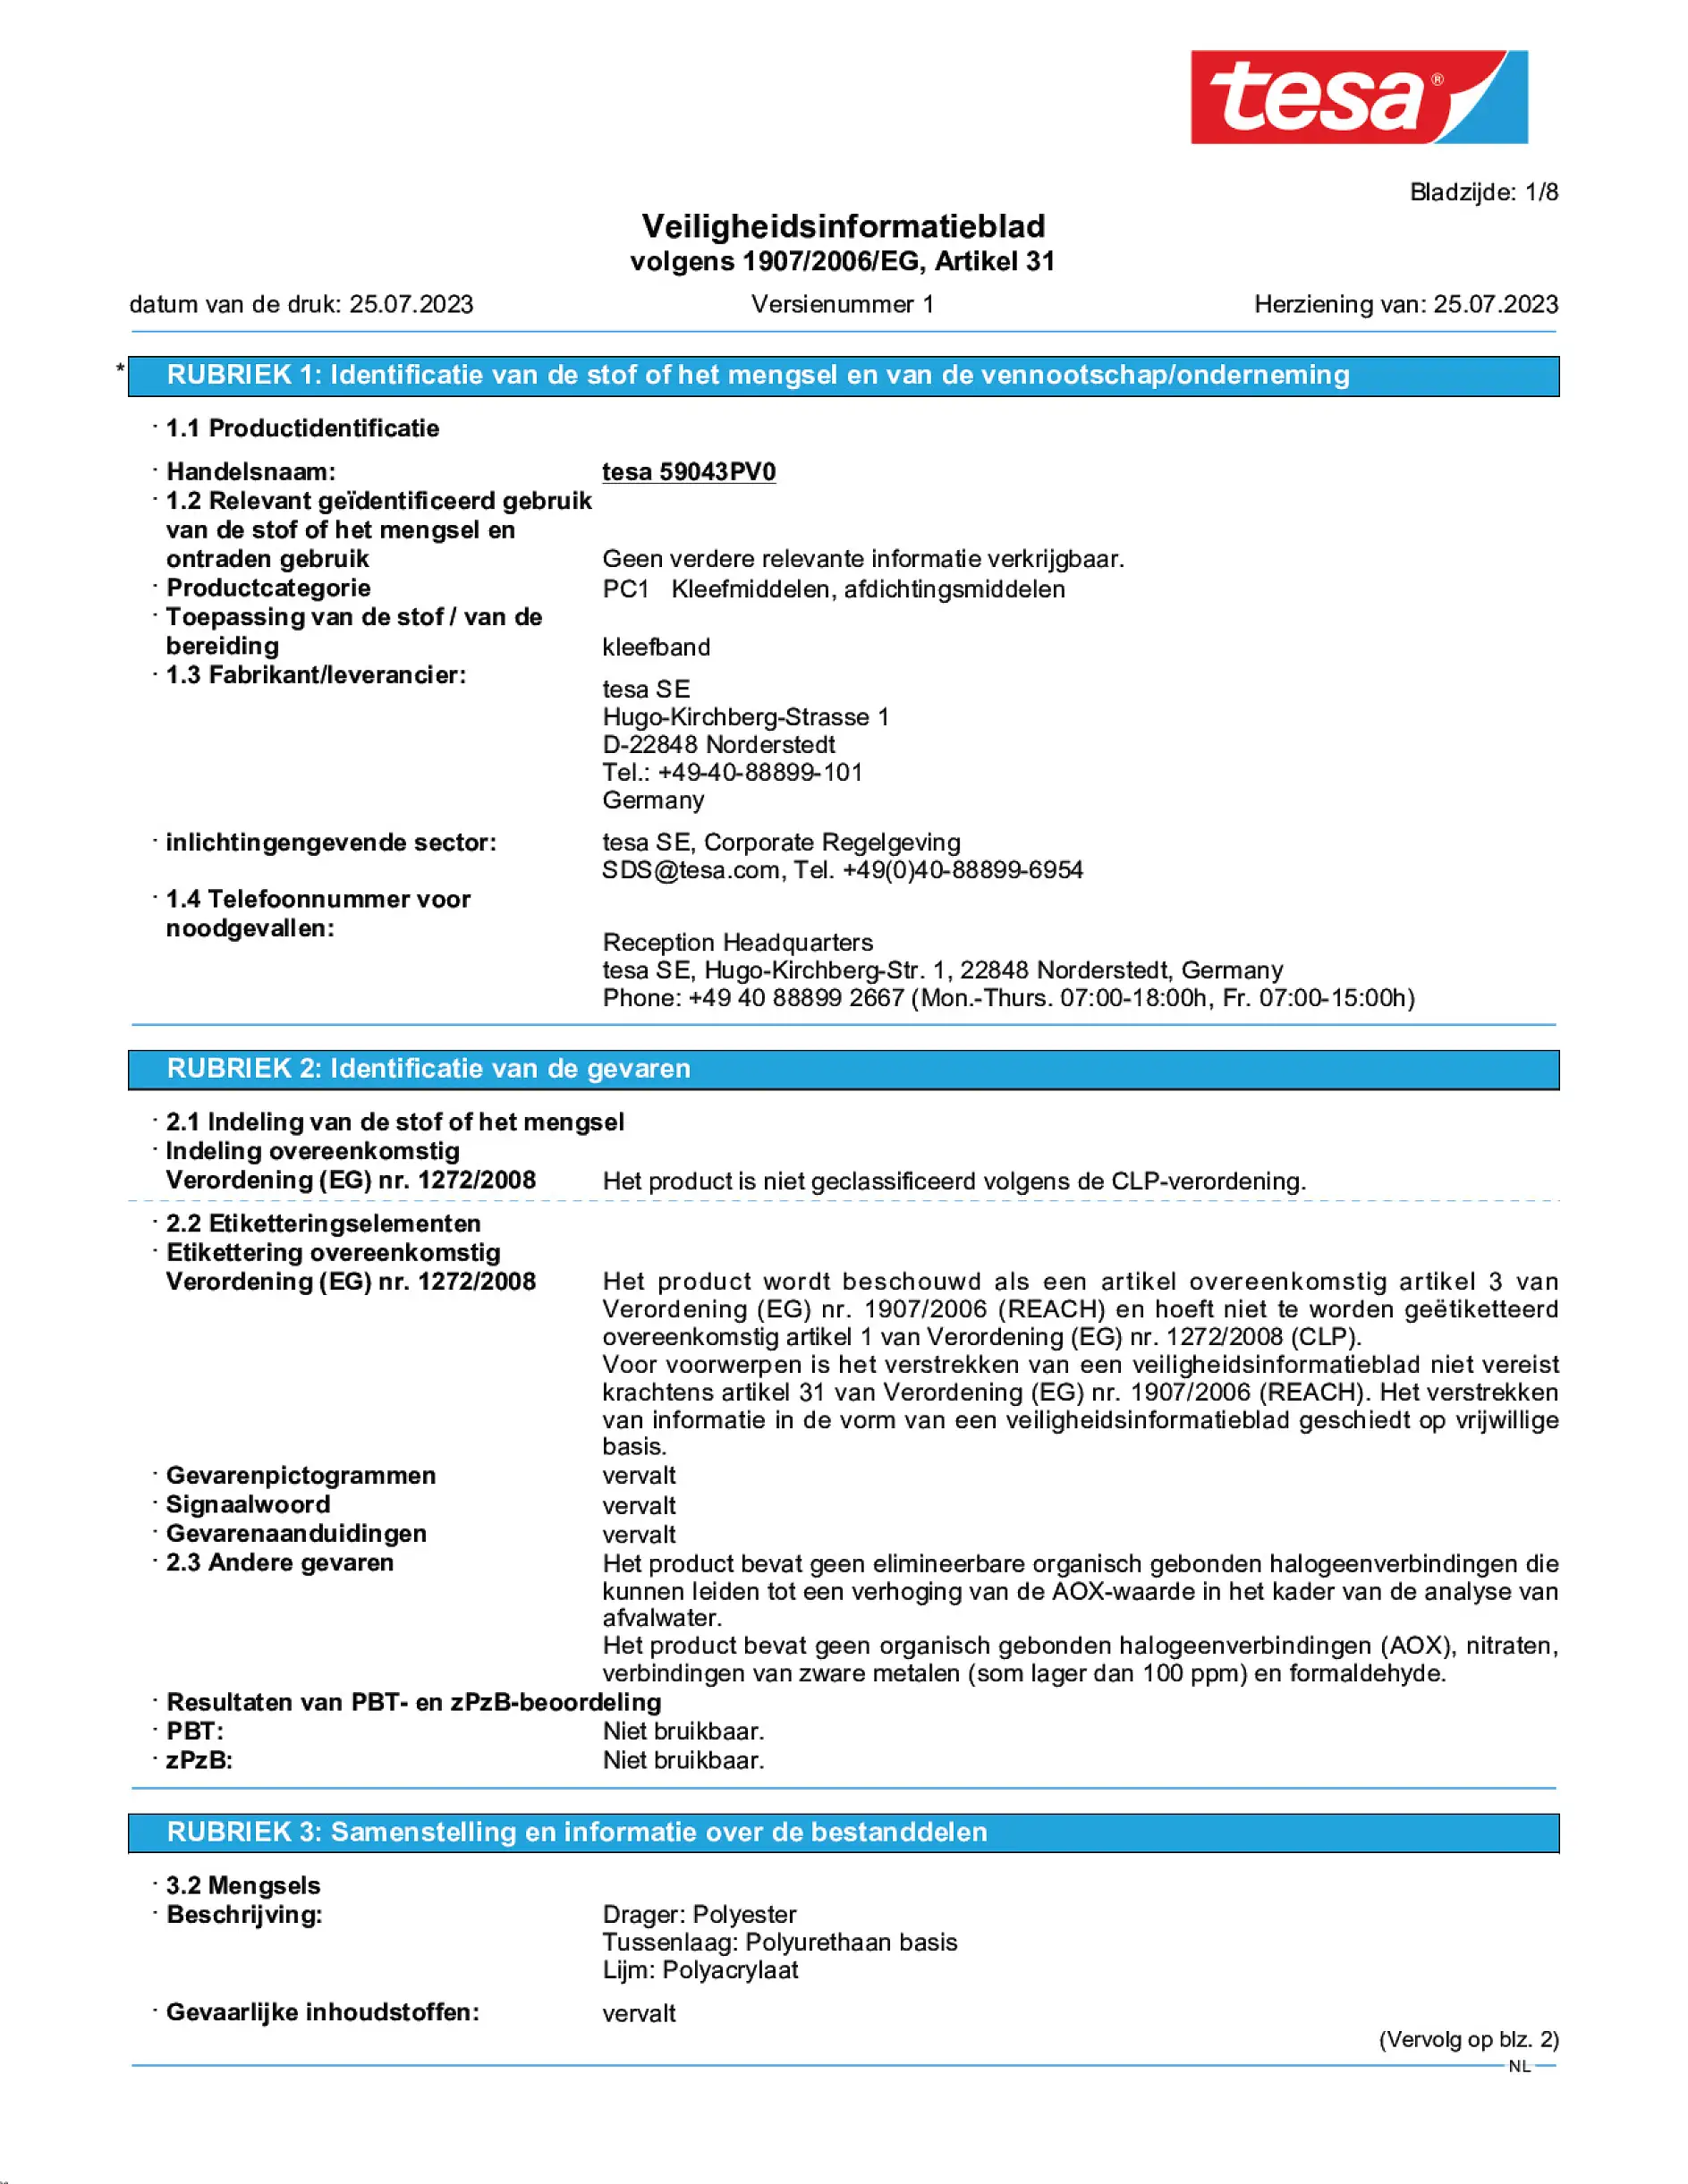 Safety data sheet_tesafilm® 59036_nl-NL_v1